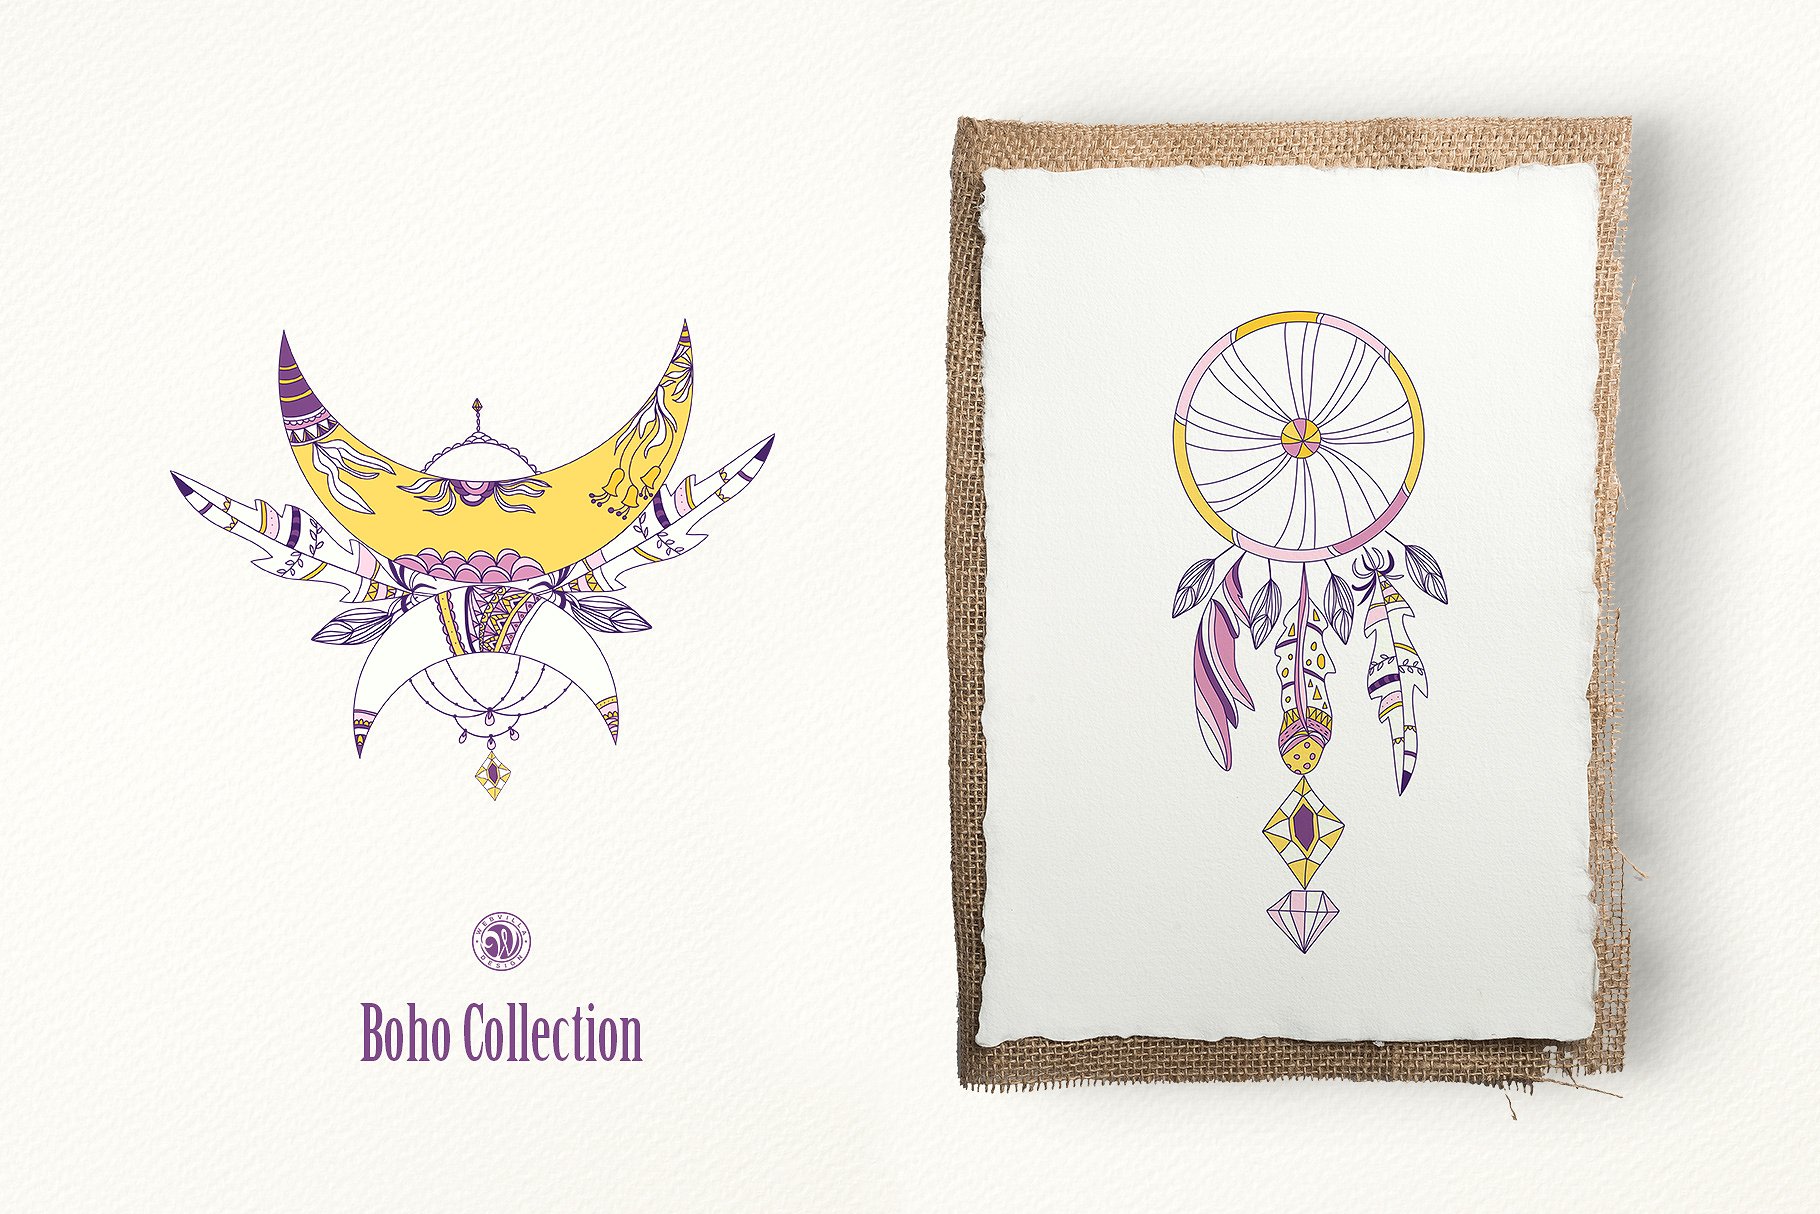 紫色波西米亚手绘素材Purple Boho Collecti